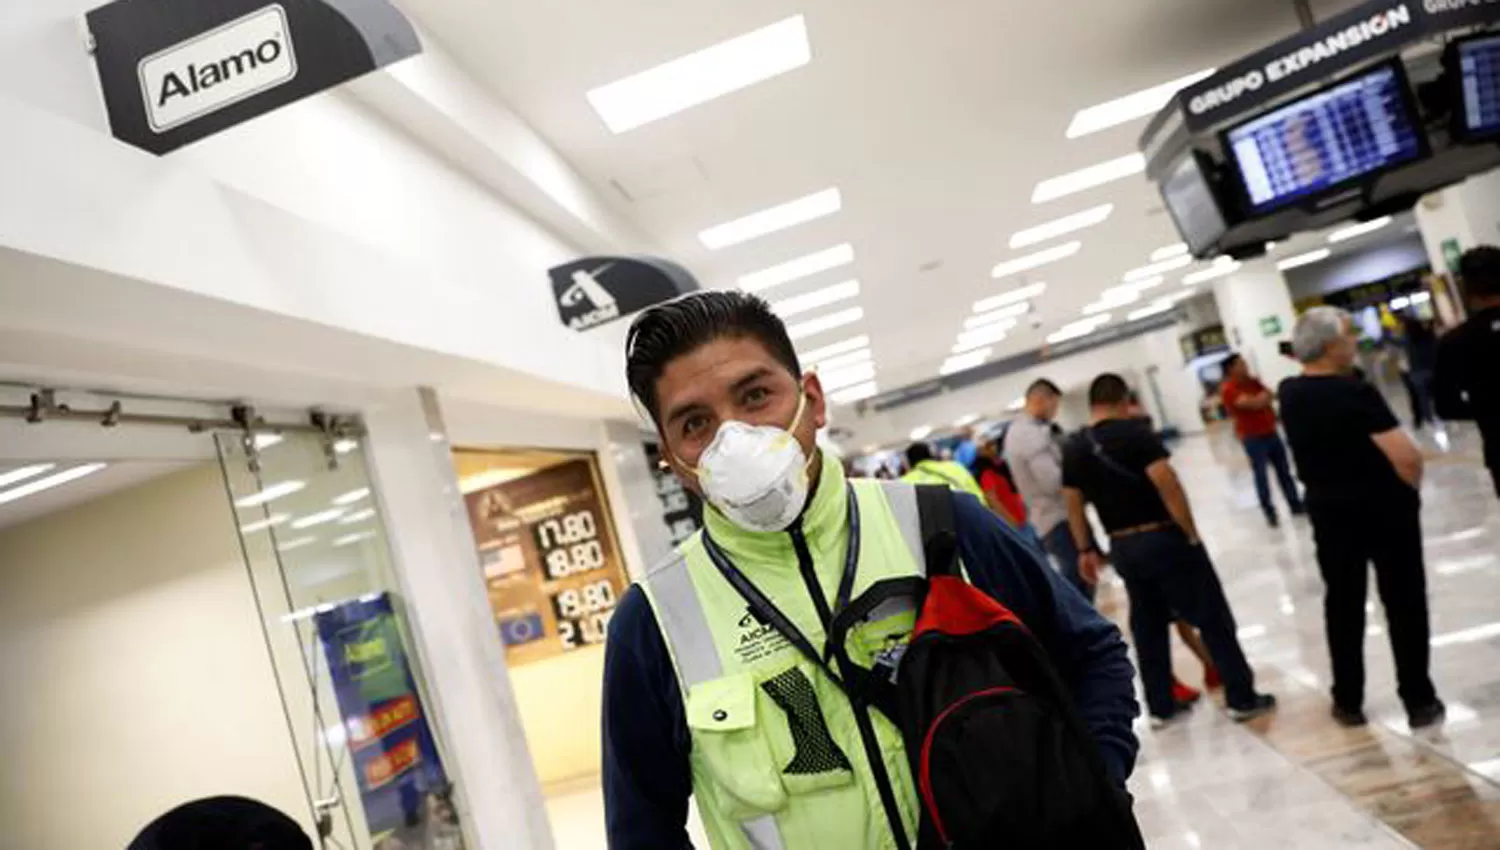 EN MÉXICO. Dentro del aeropuerto de la Ciudad de México comenzaron a tomar medidas preventivas.